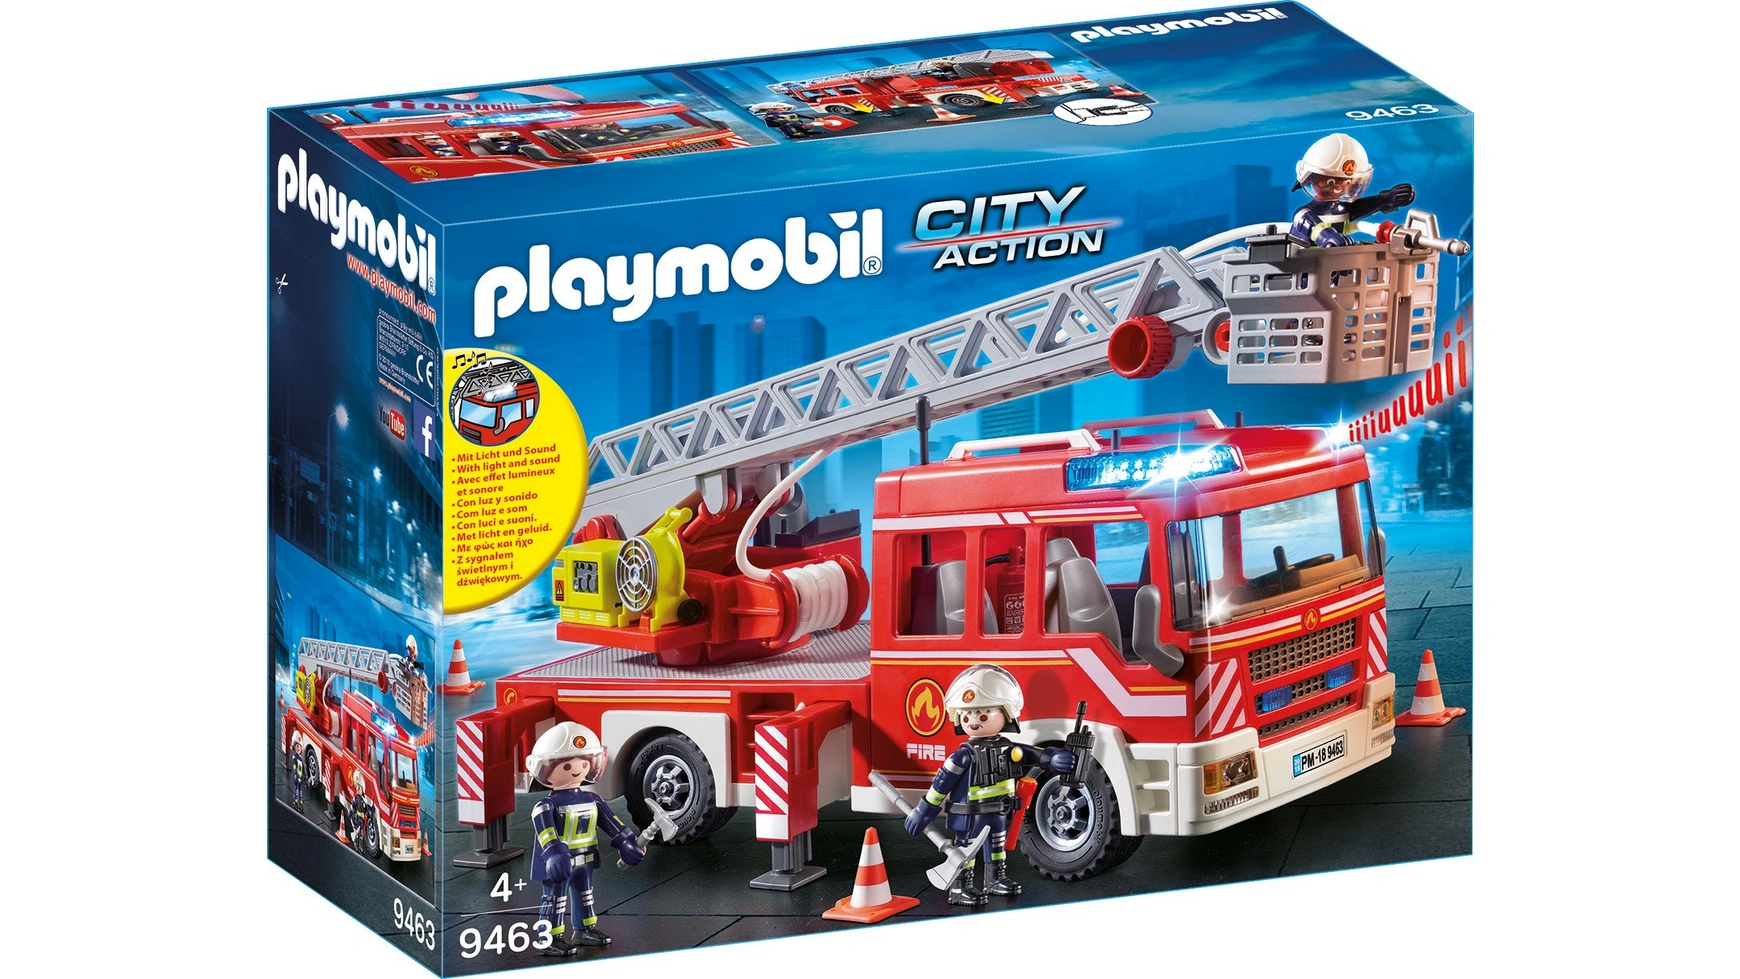 City action пожарная машина-лестница Playmobil playmobil city action 9464 пожарная служба пожарная машина 138 дет